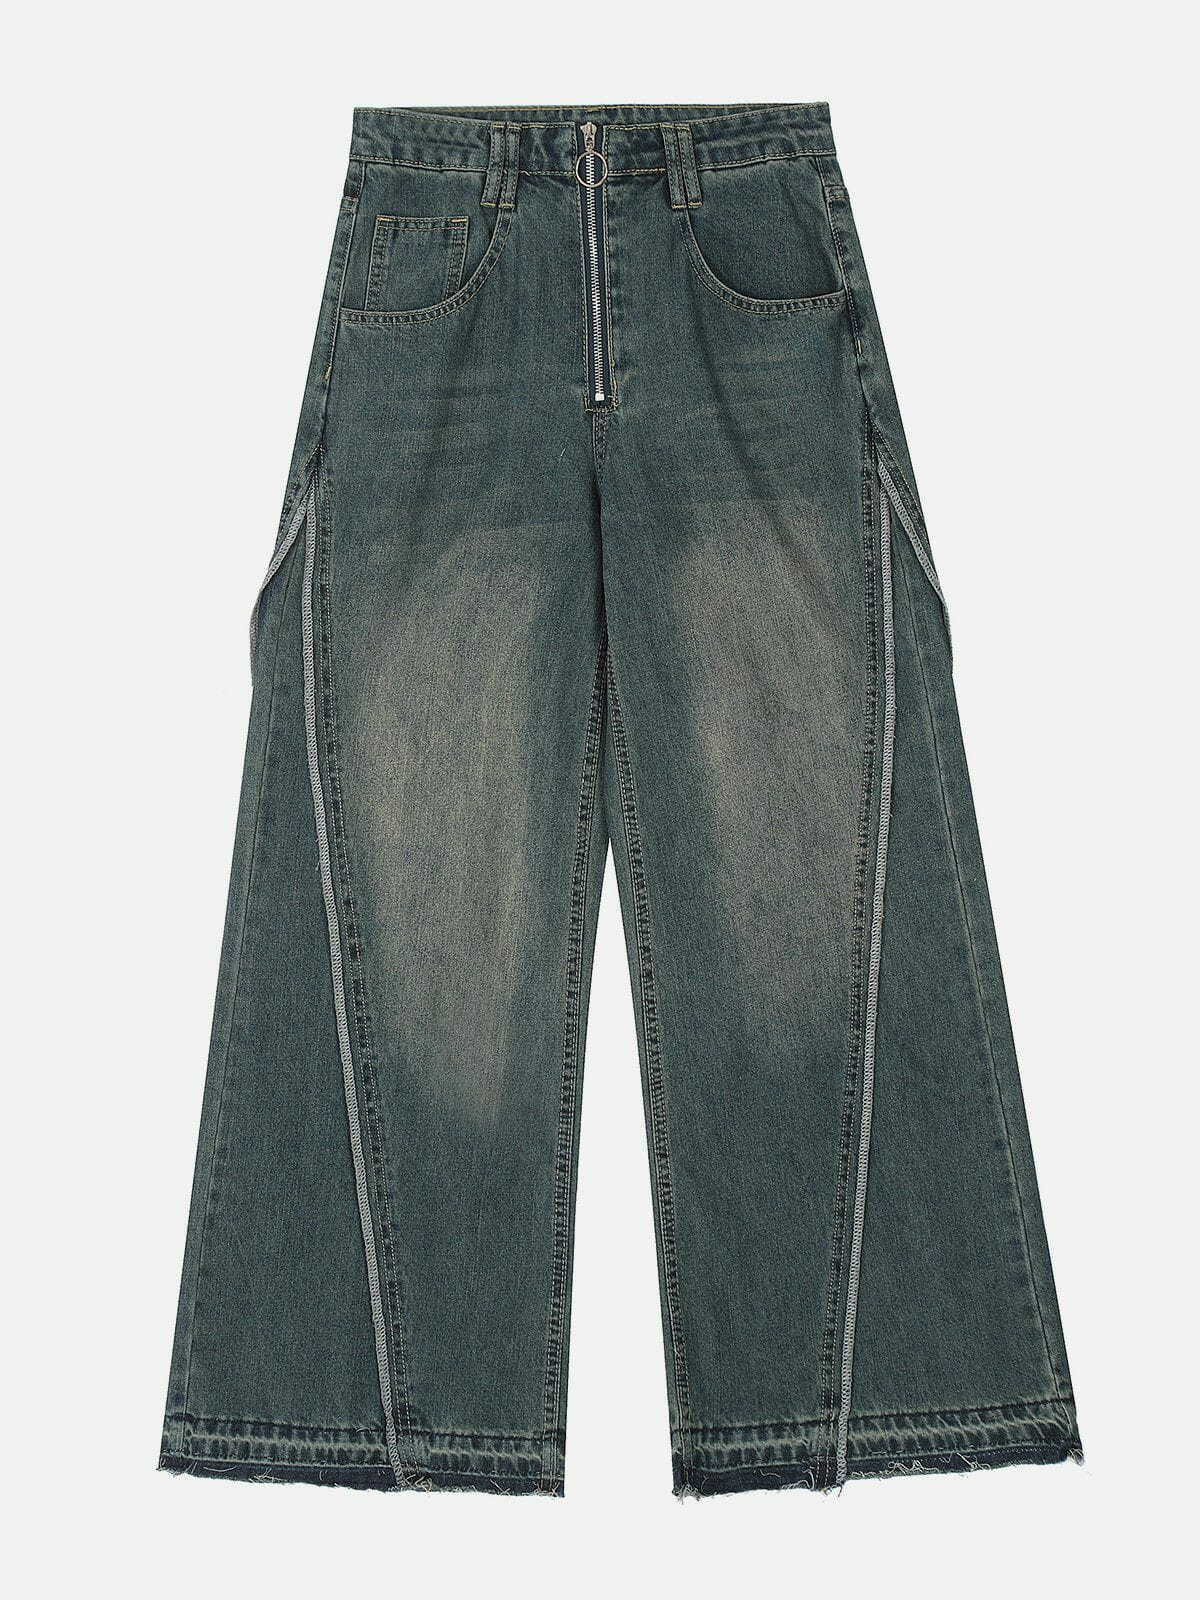 youthful slit fringe jeans loose & trending style 6904